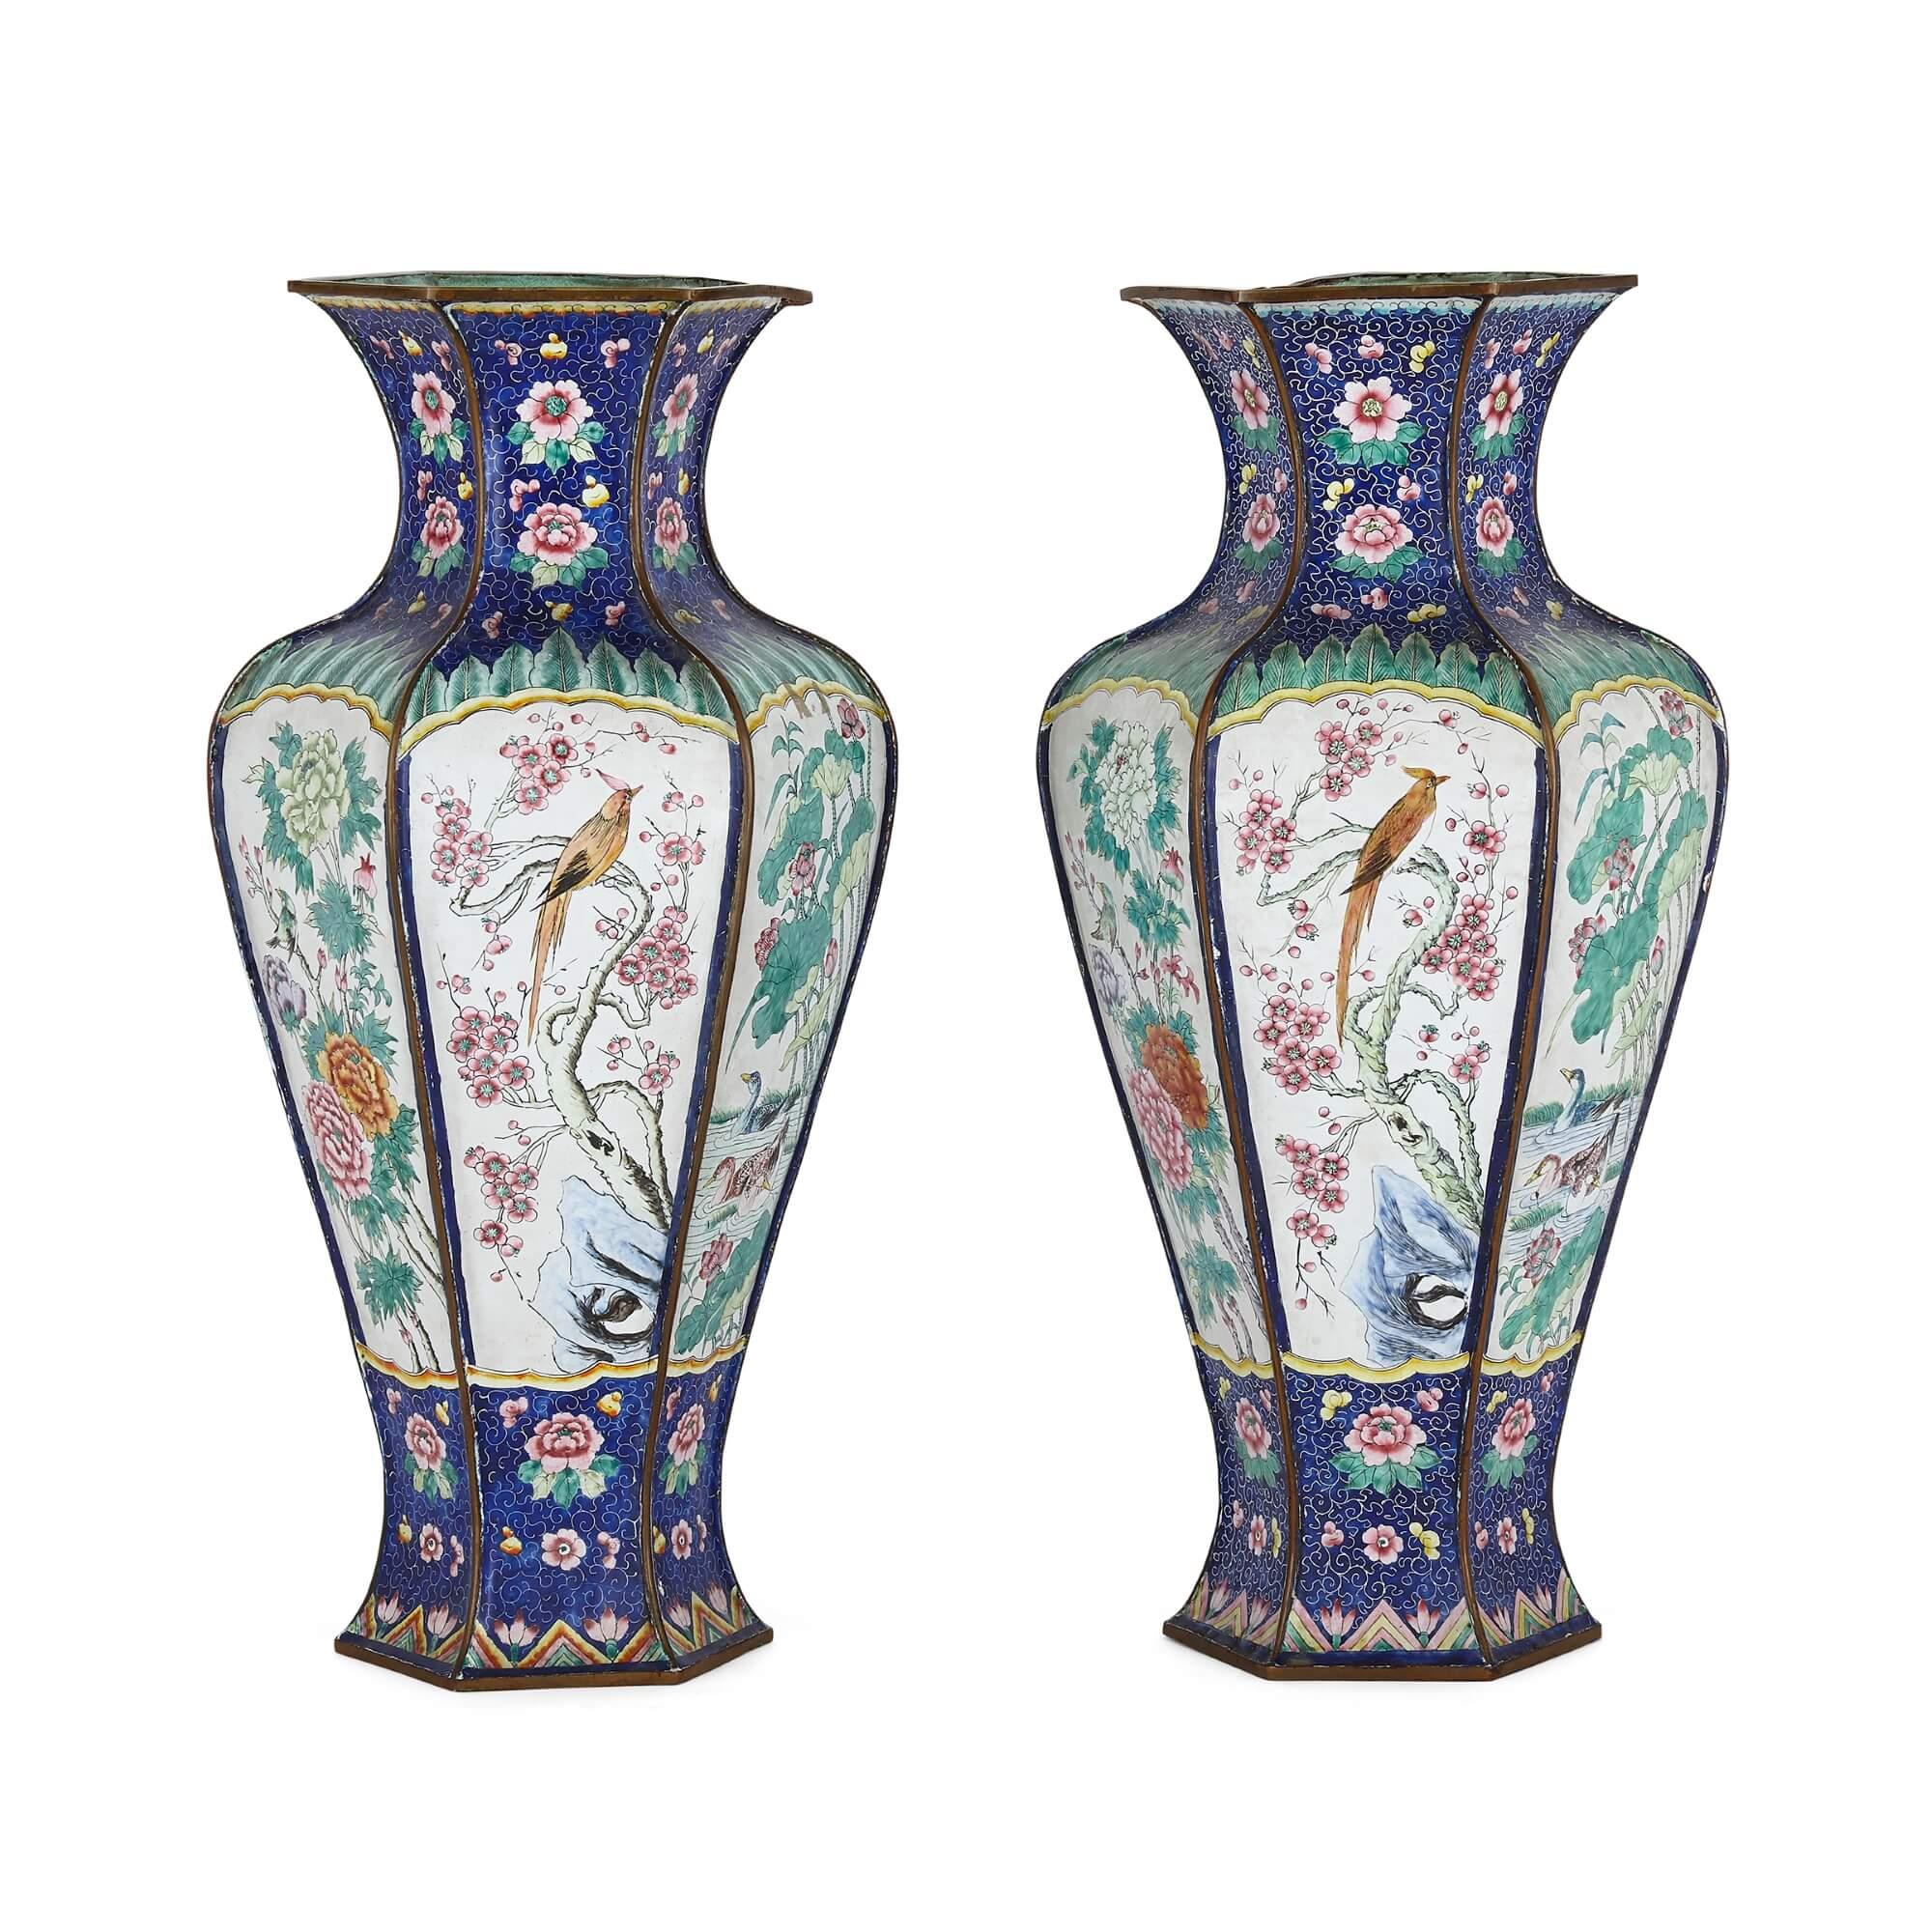 Paar chinesische Emaillevasen
Chinesisch, 19. Jahrhundert
Höhe 38cm, Durchmesser 19cm

Diese charmanten chinesischen Vasen sind aus Emaille gefertigt. Jede Vase hat einen bauchigen Körper mit ausgestelltem Fuß und einem taillierten Hals, der in